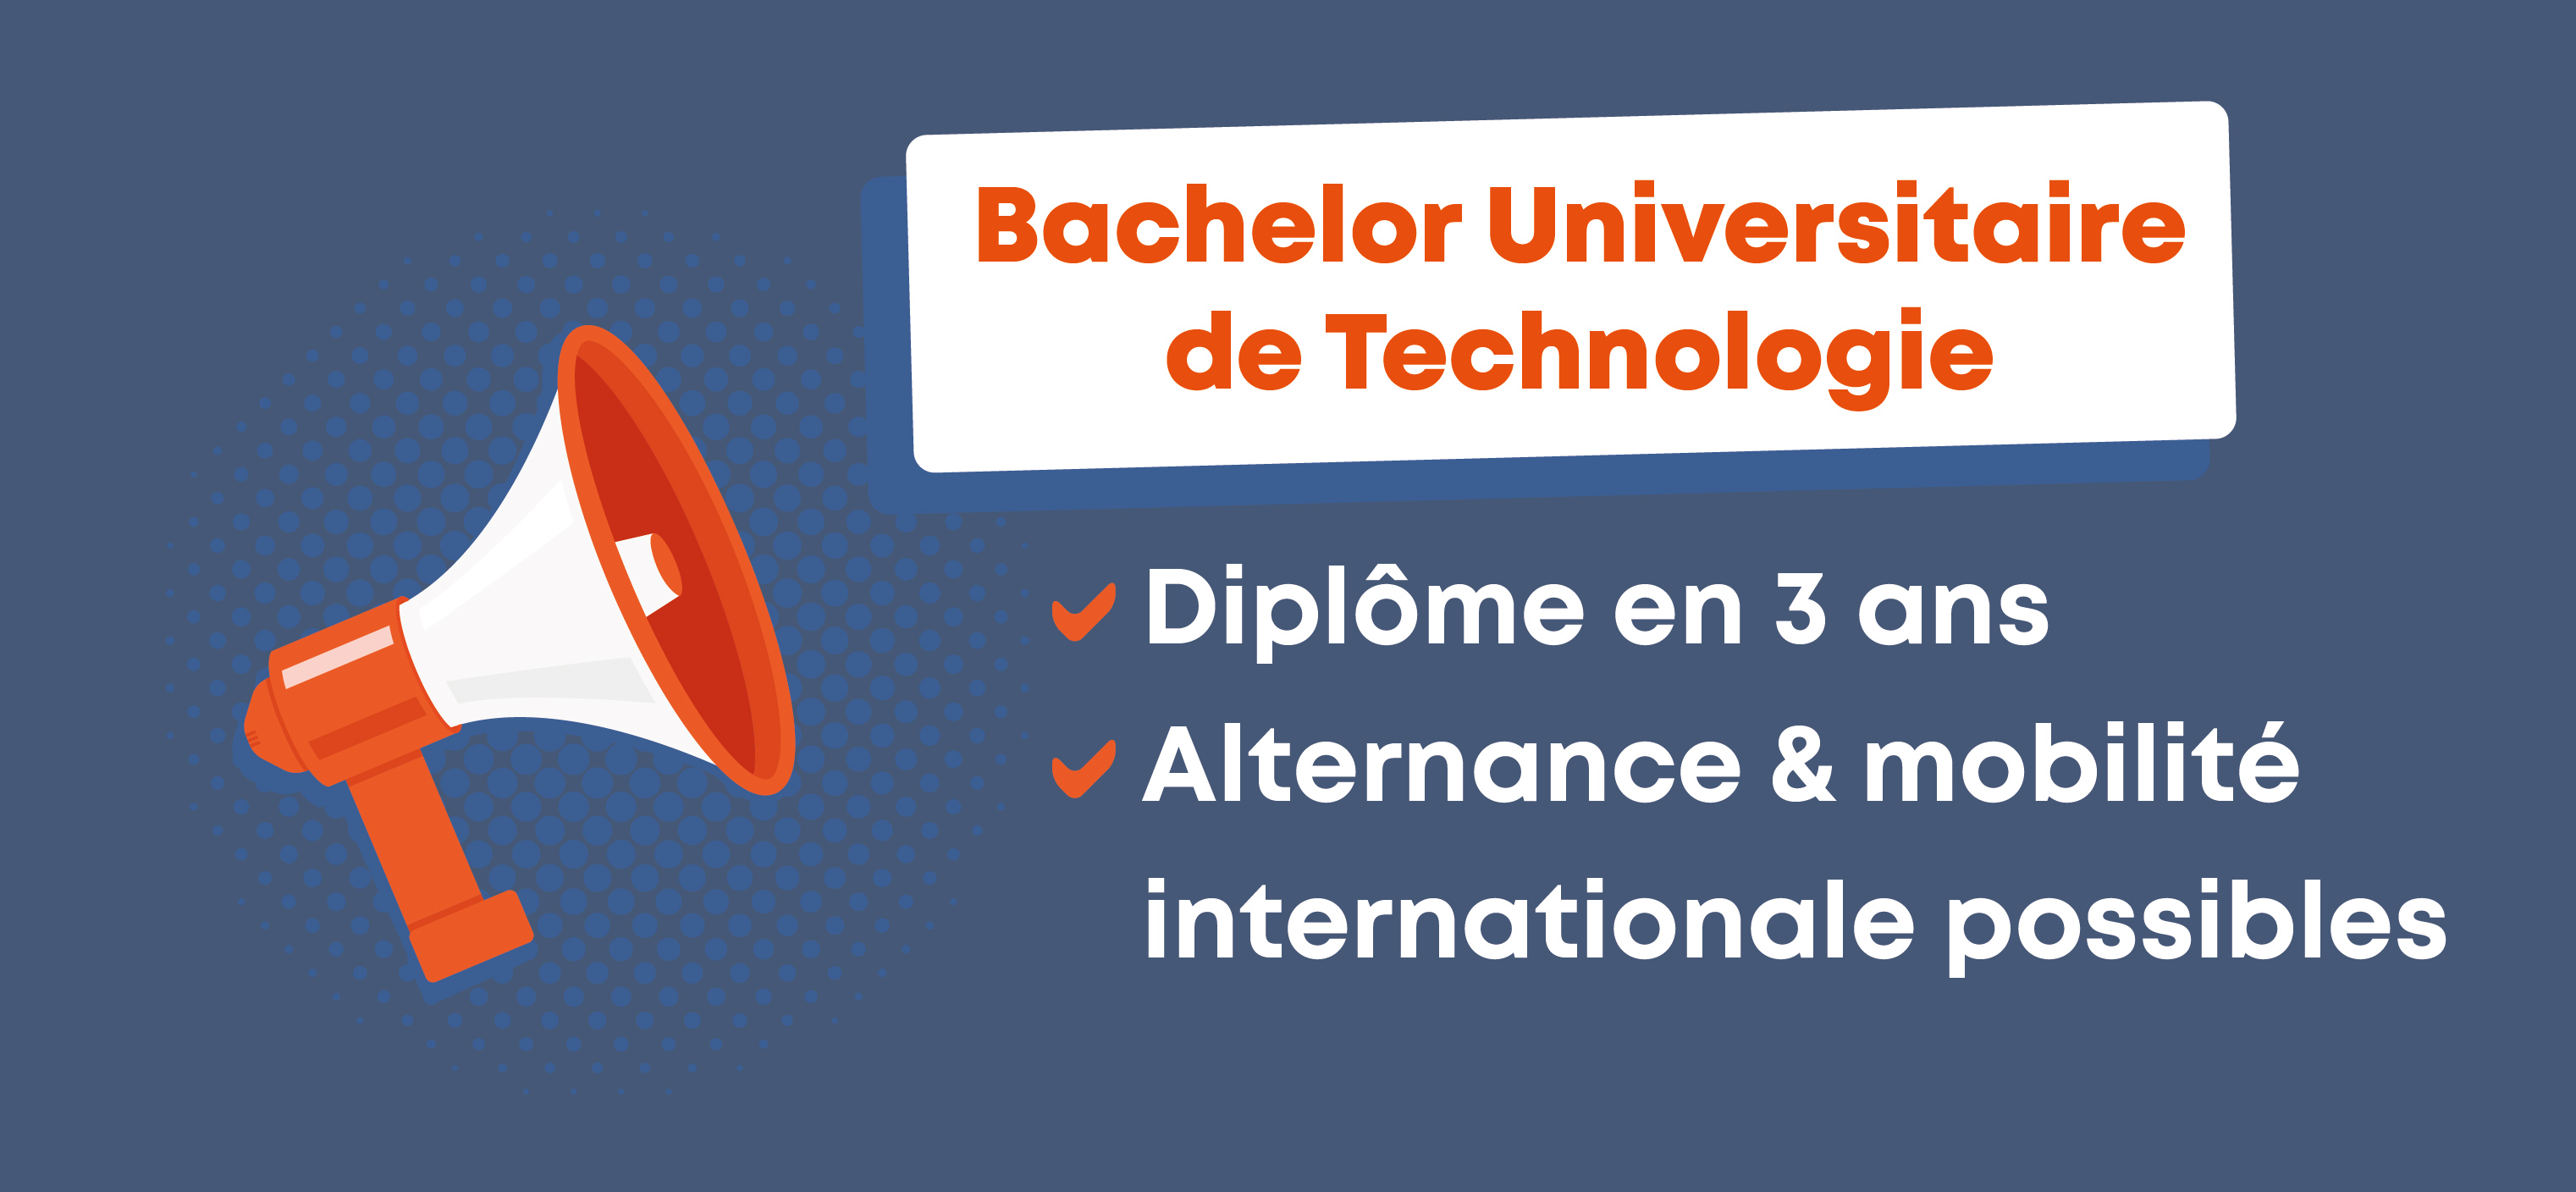 Bachelor Universitaire de Technologie IUT2